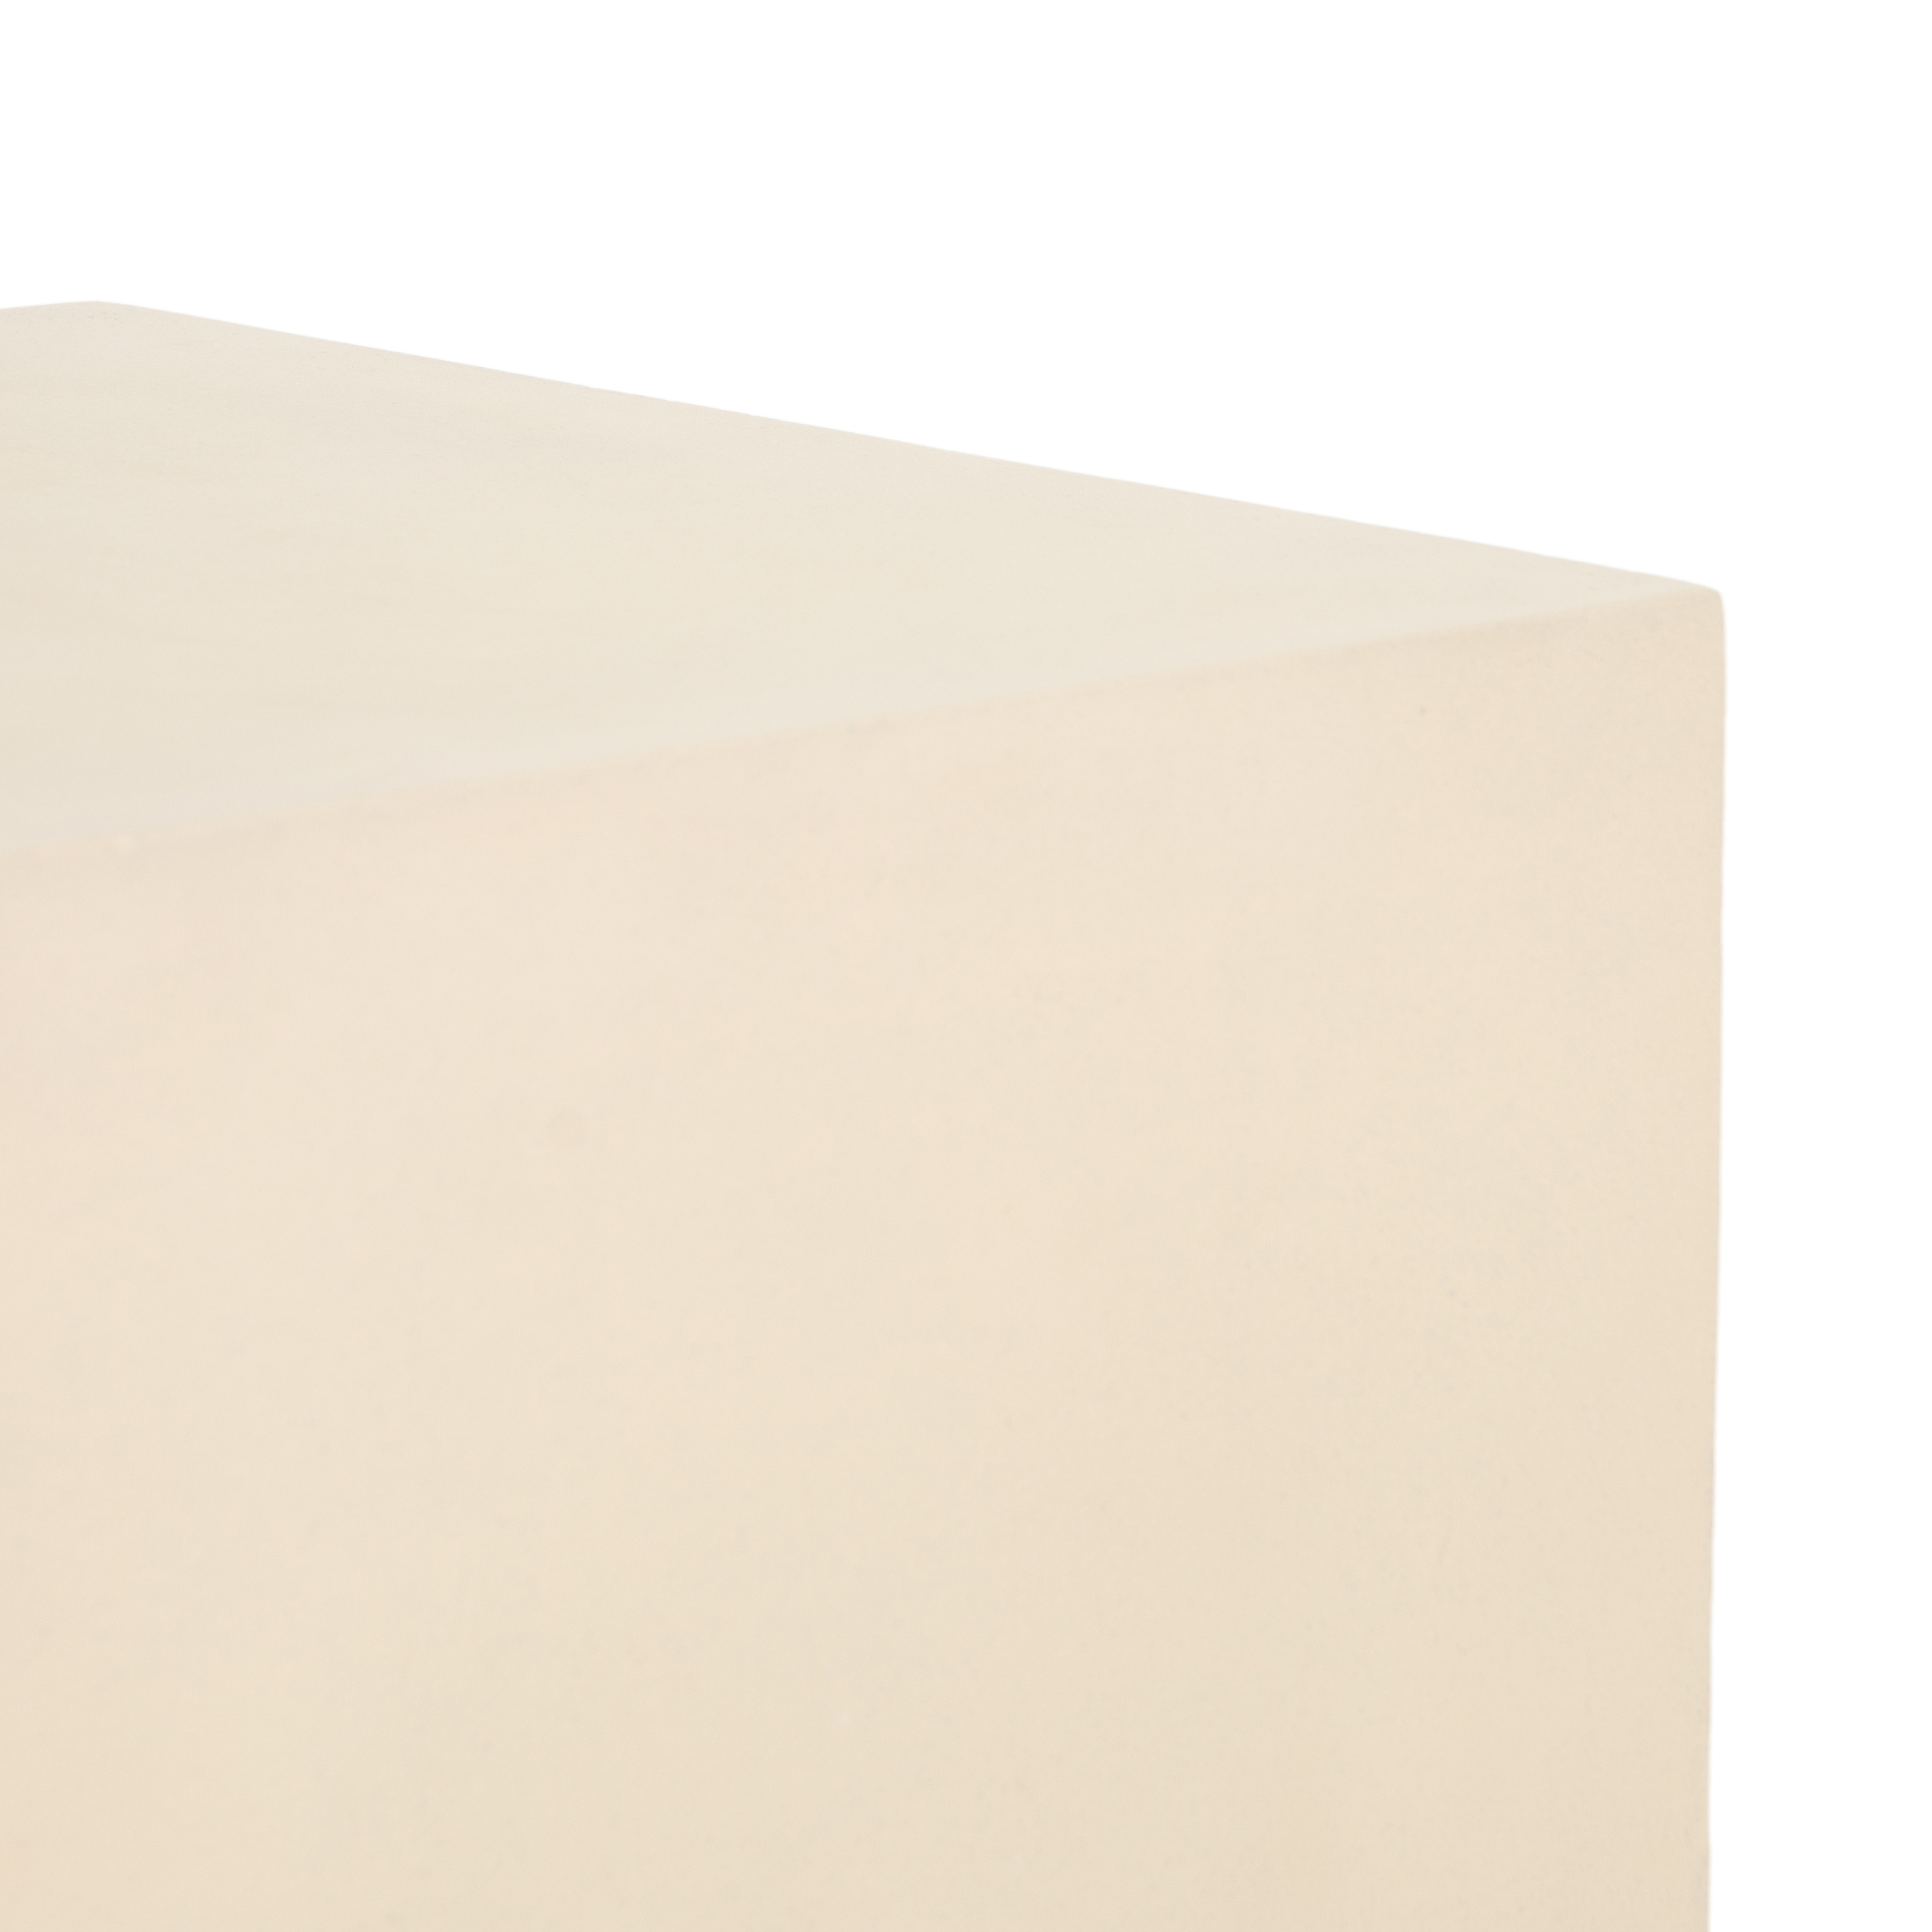 Aprilette End Table, Parchment White - Image 6